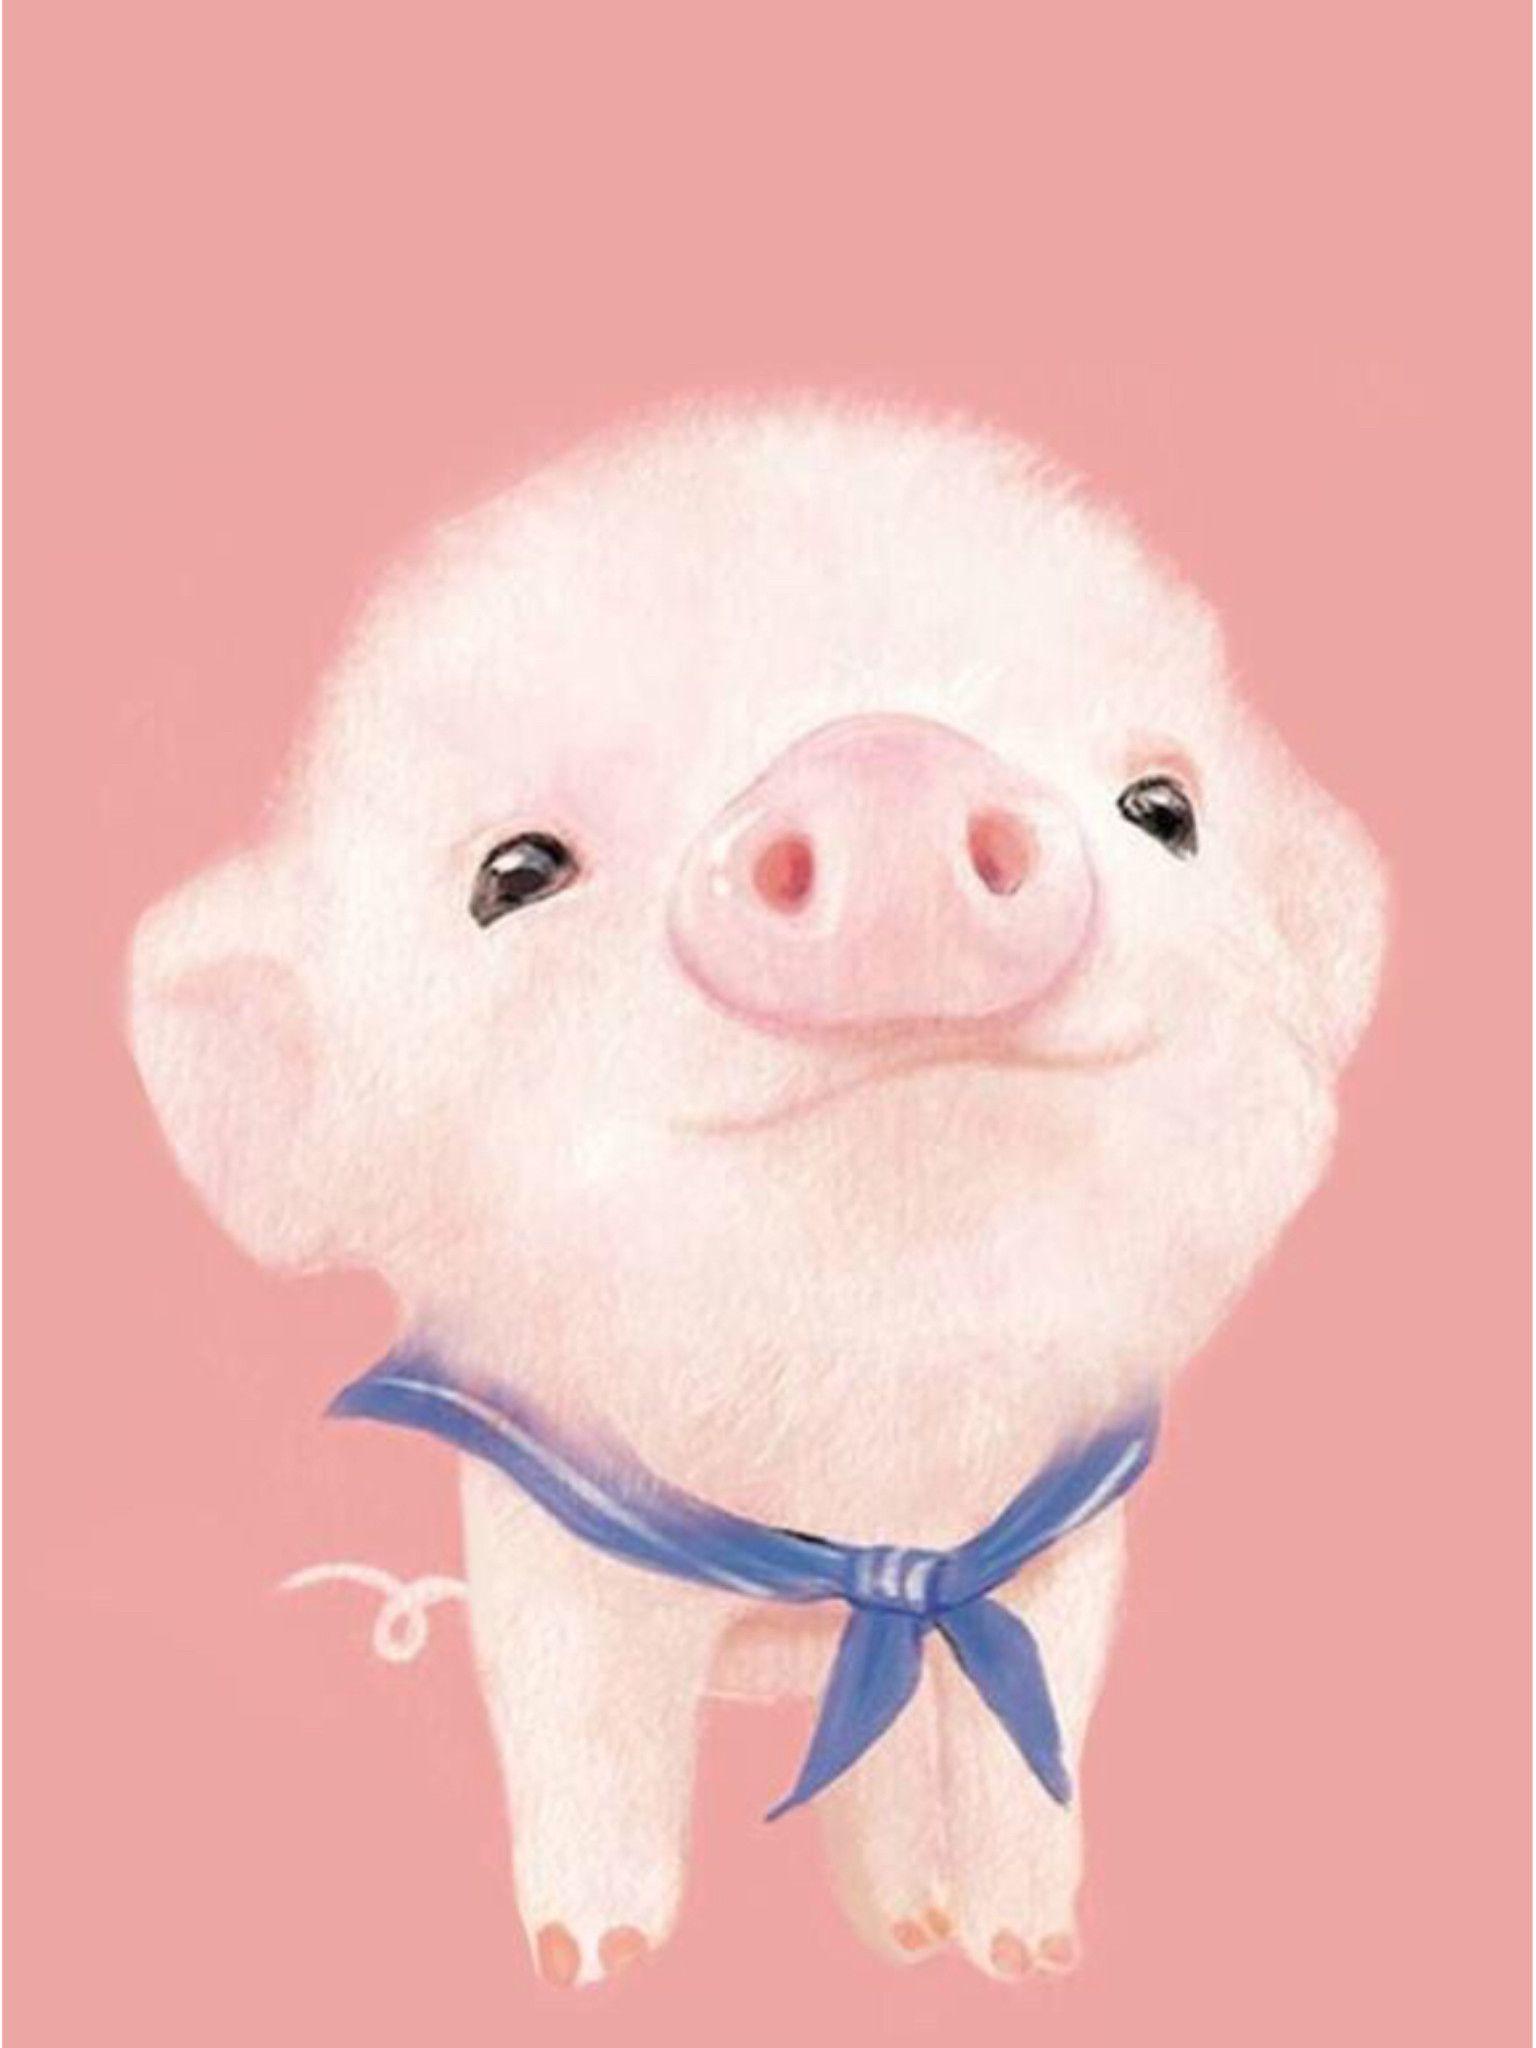 Piggy Wallpaper